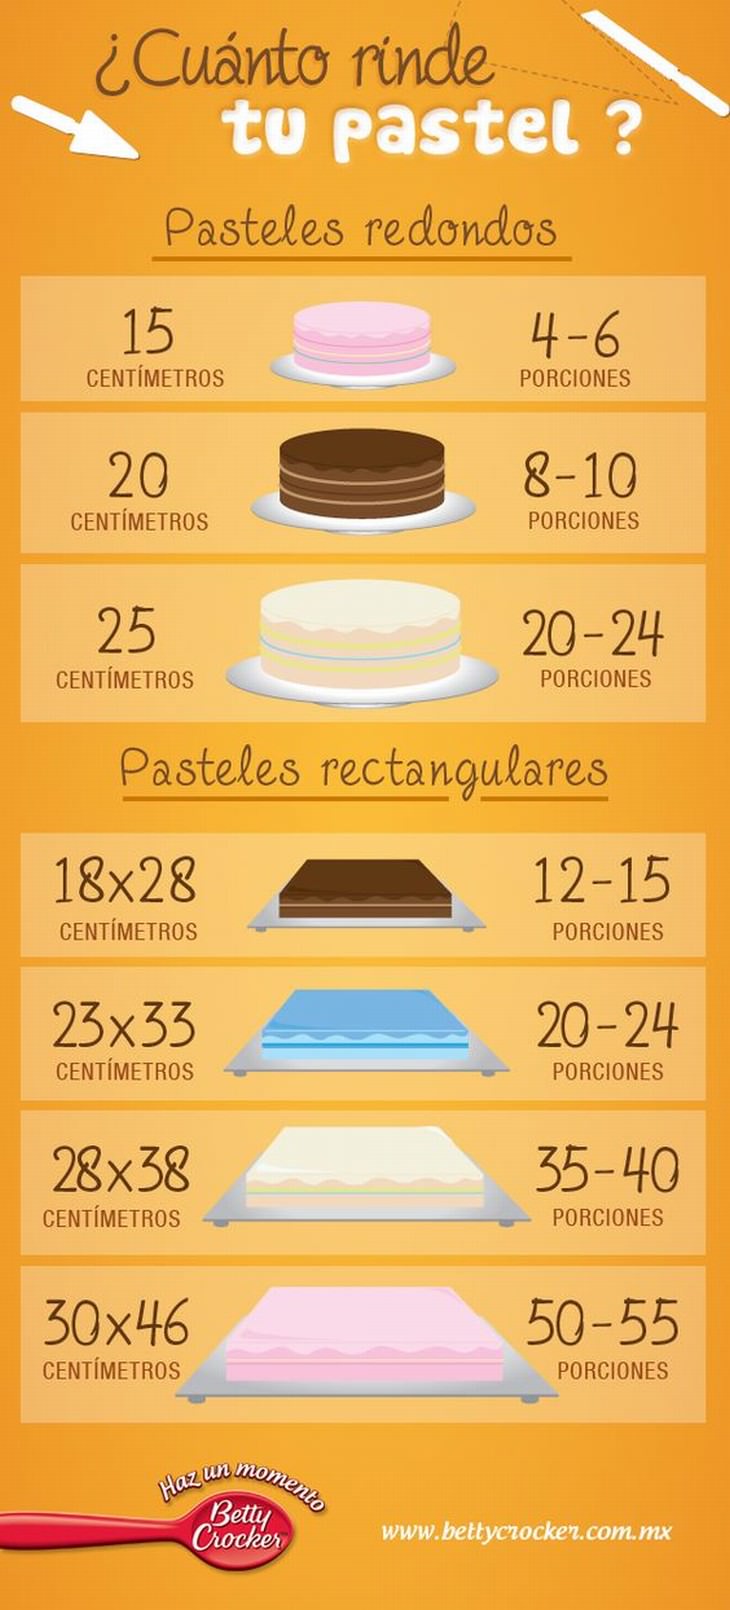 infografía para preparar dulces